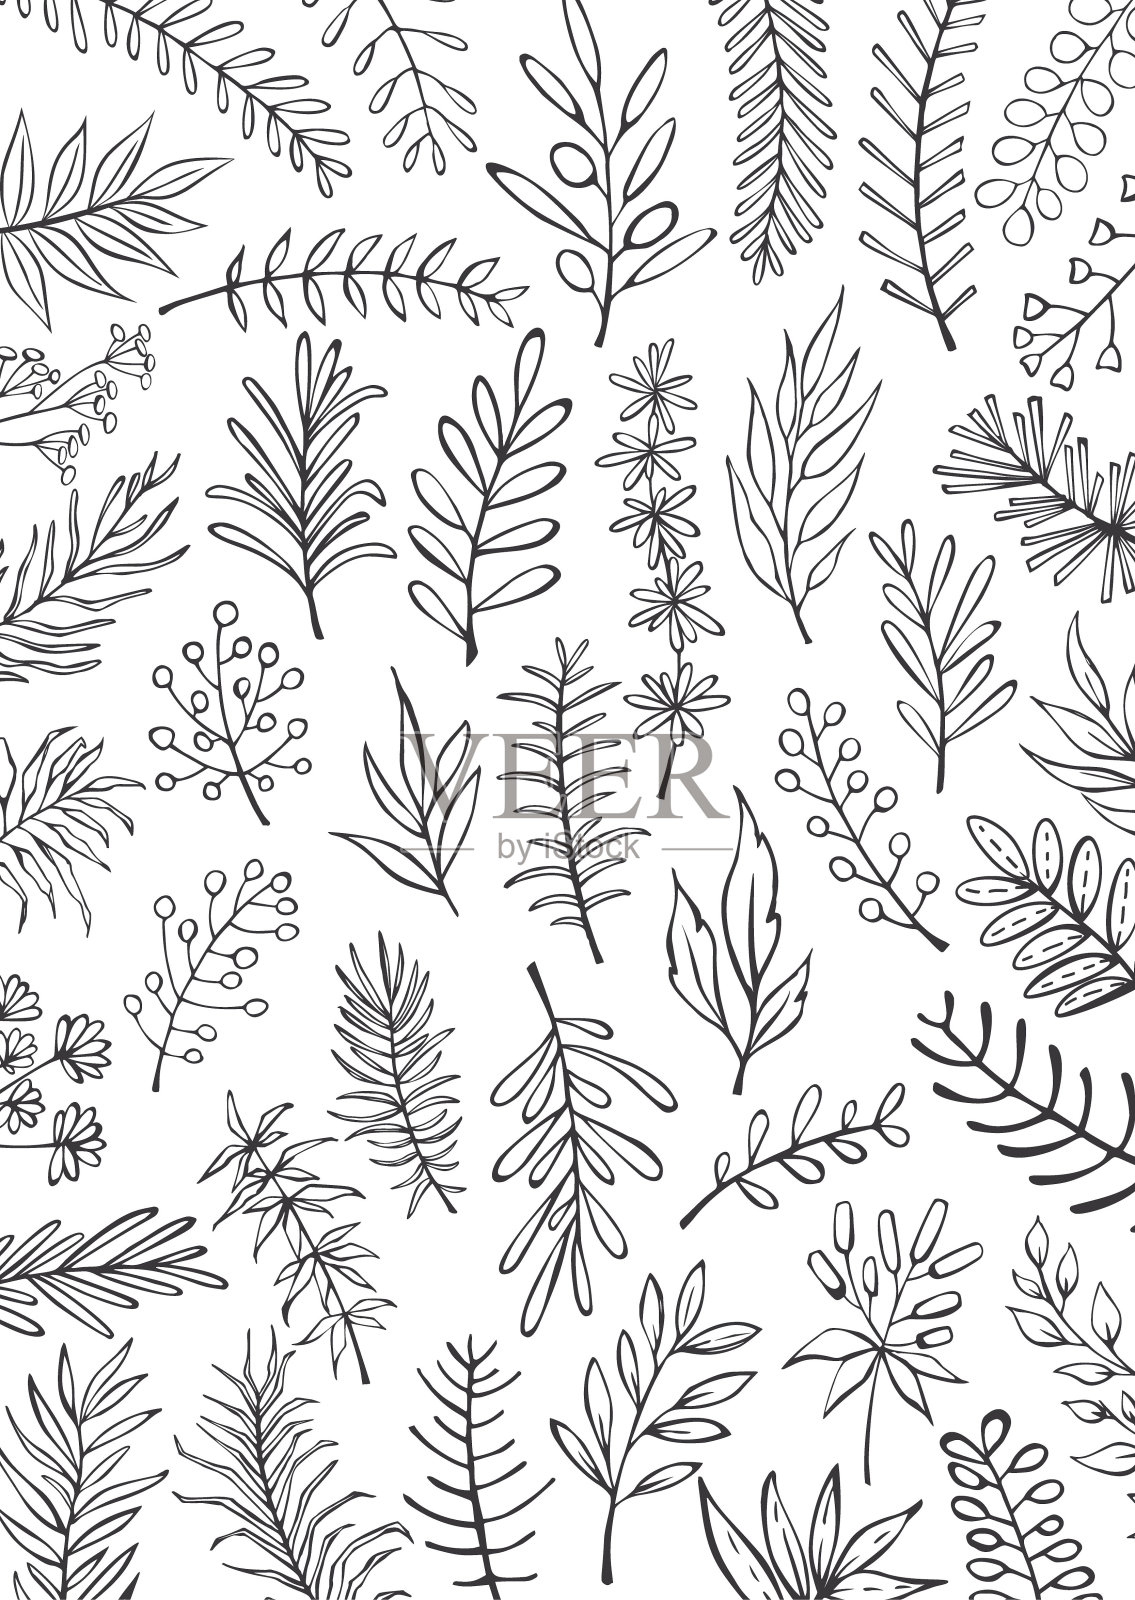 黑白花手绘农家风格勾勒细枝枝桠背景插画图片素材